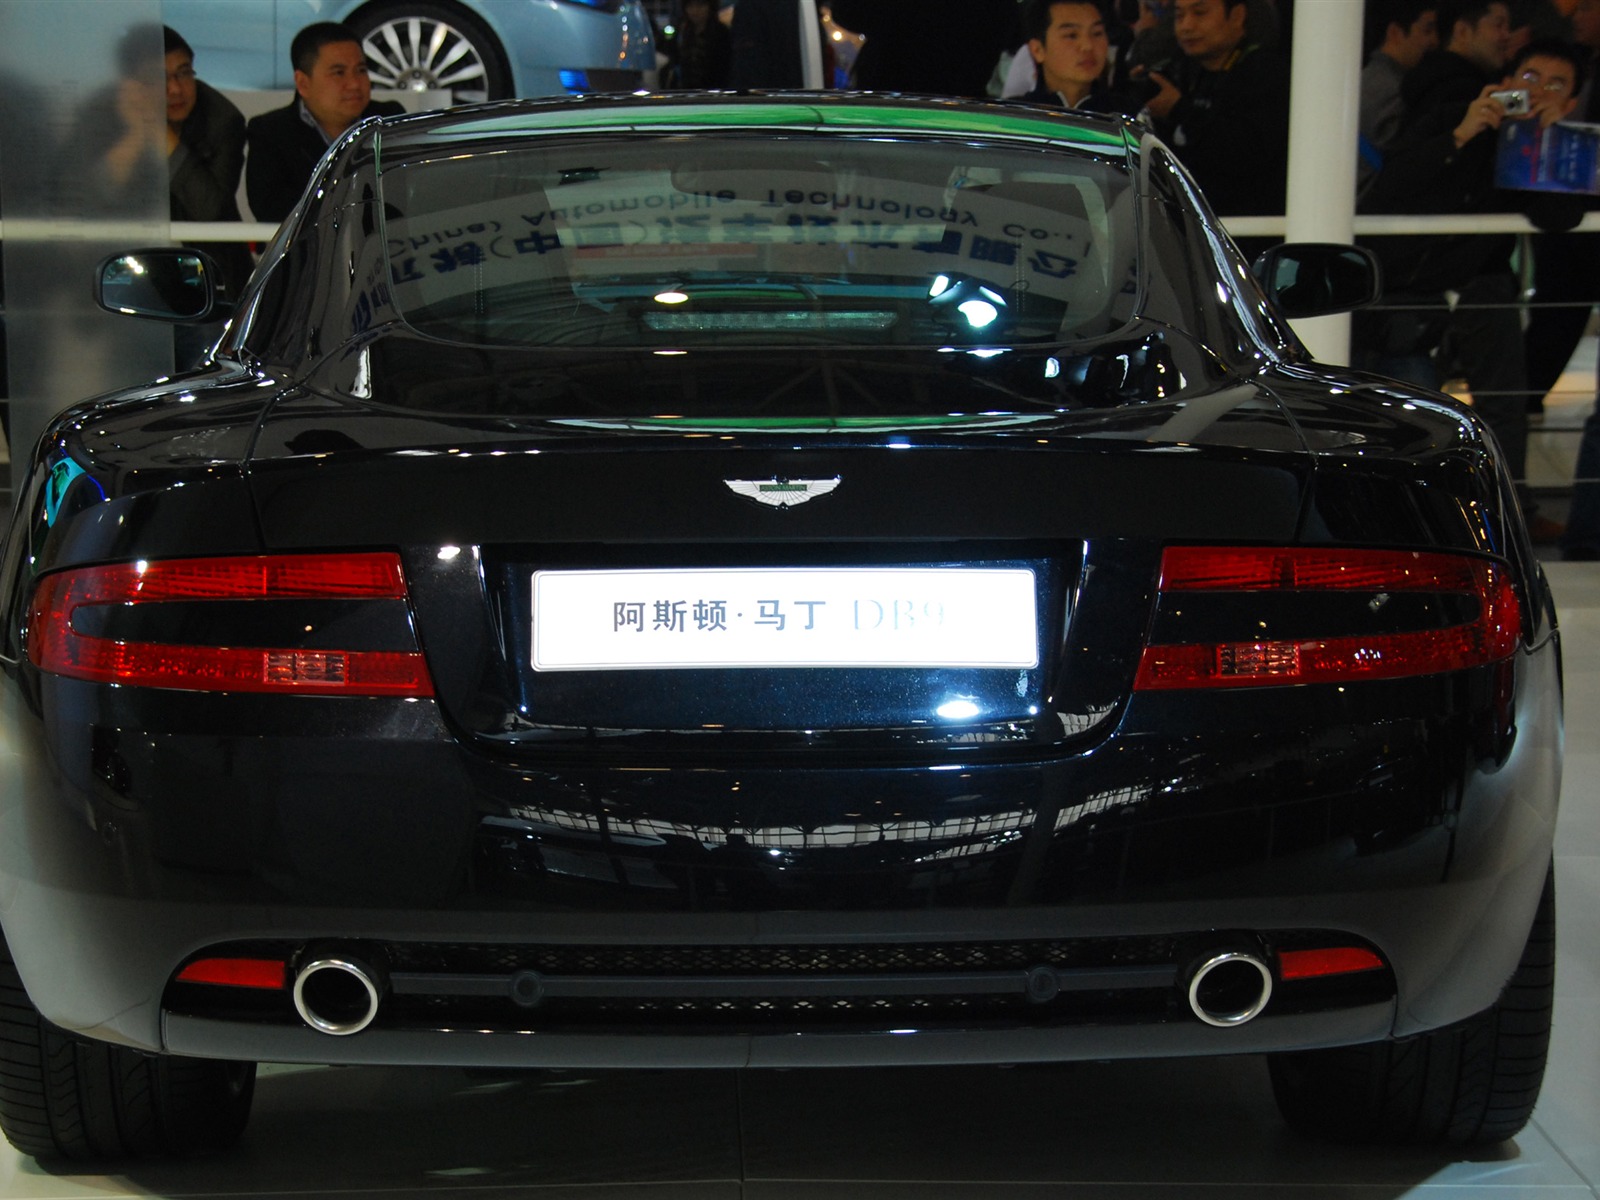 2010 Beijing International Auto Show (1) (z321x123 works) #30 - 1600x1200